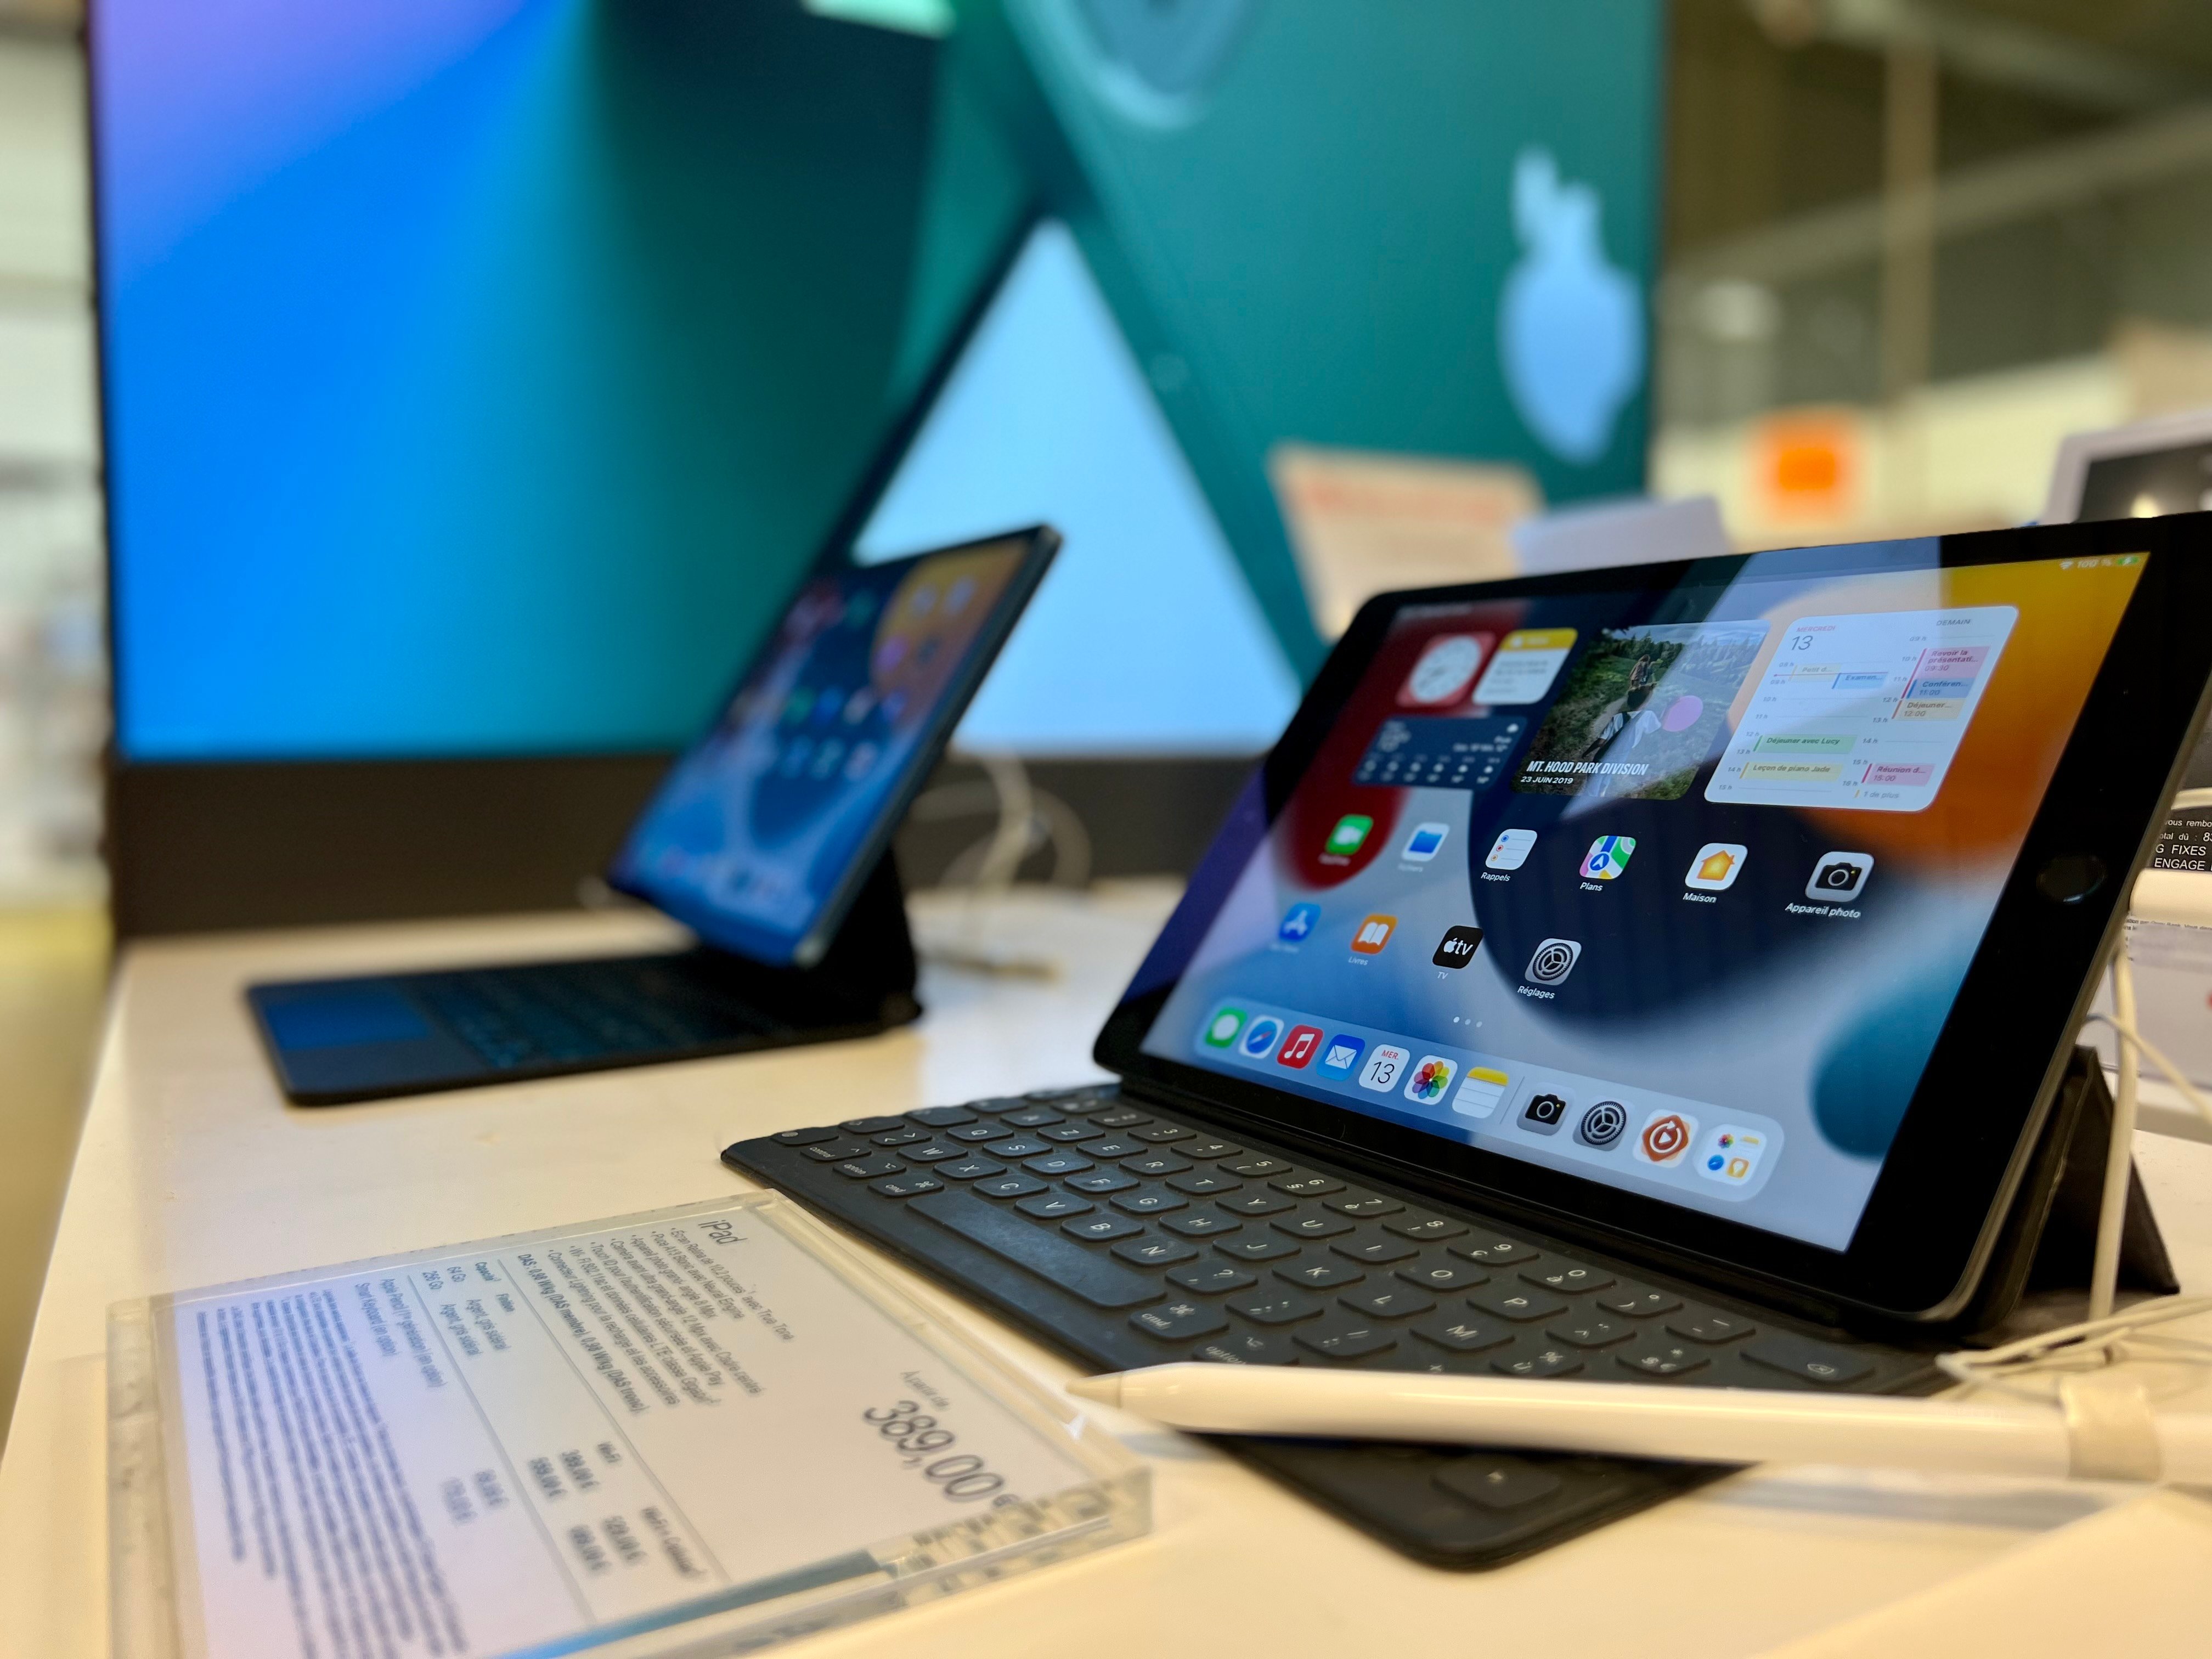 apple tablette ipad ipad mini multimédia